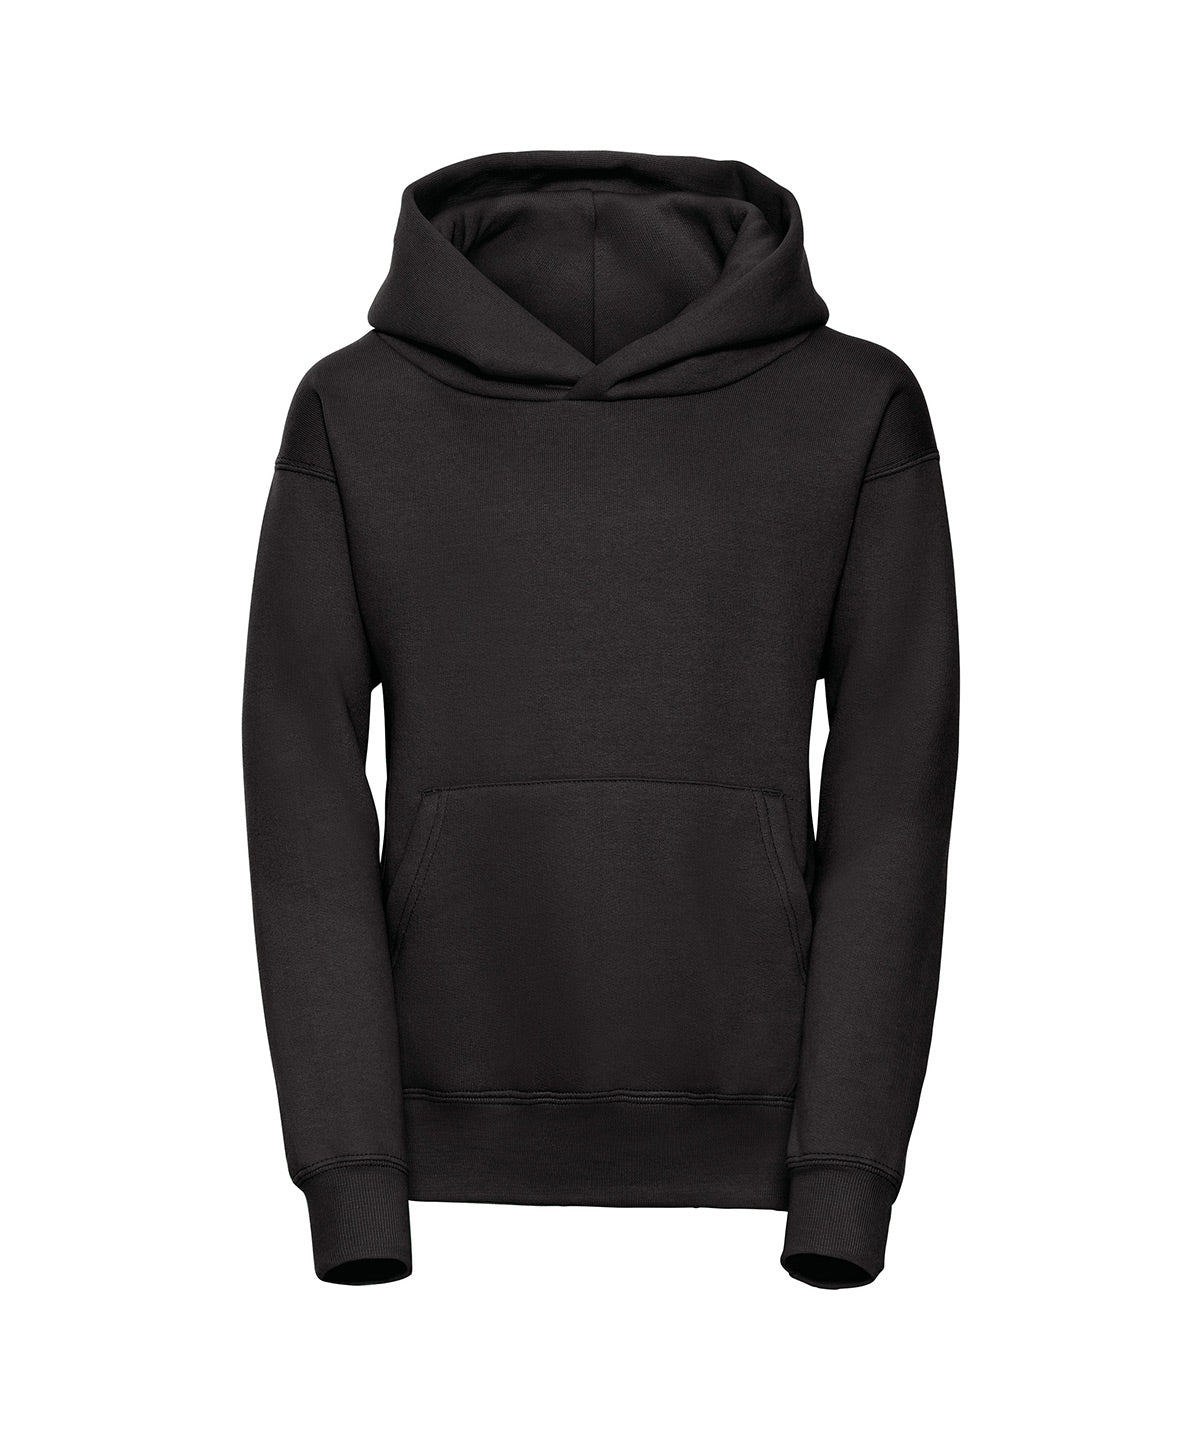 Premium 50/50 hoodie, Jr